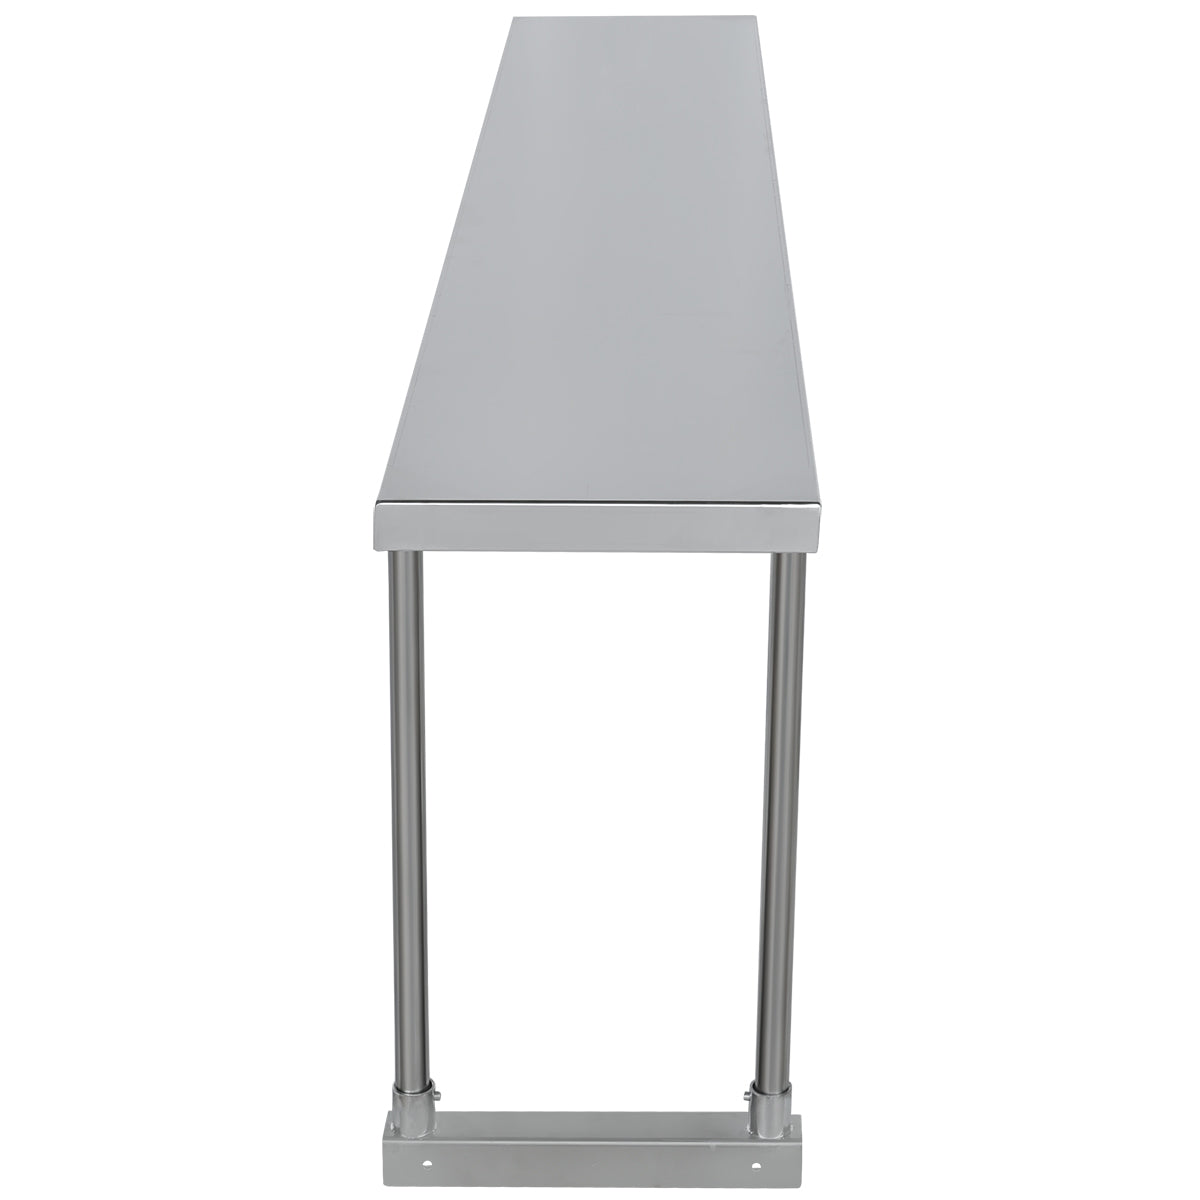 Empura ESOS1272 Overshelf Table-mounted Standard